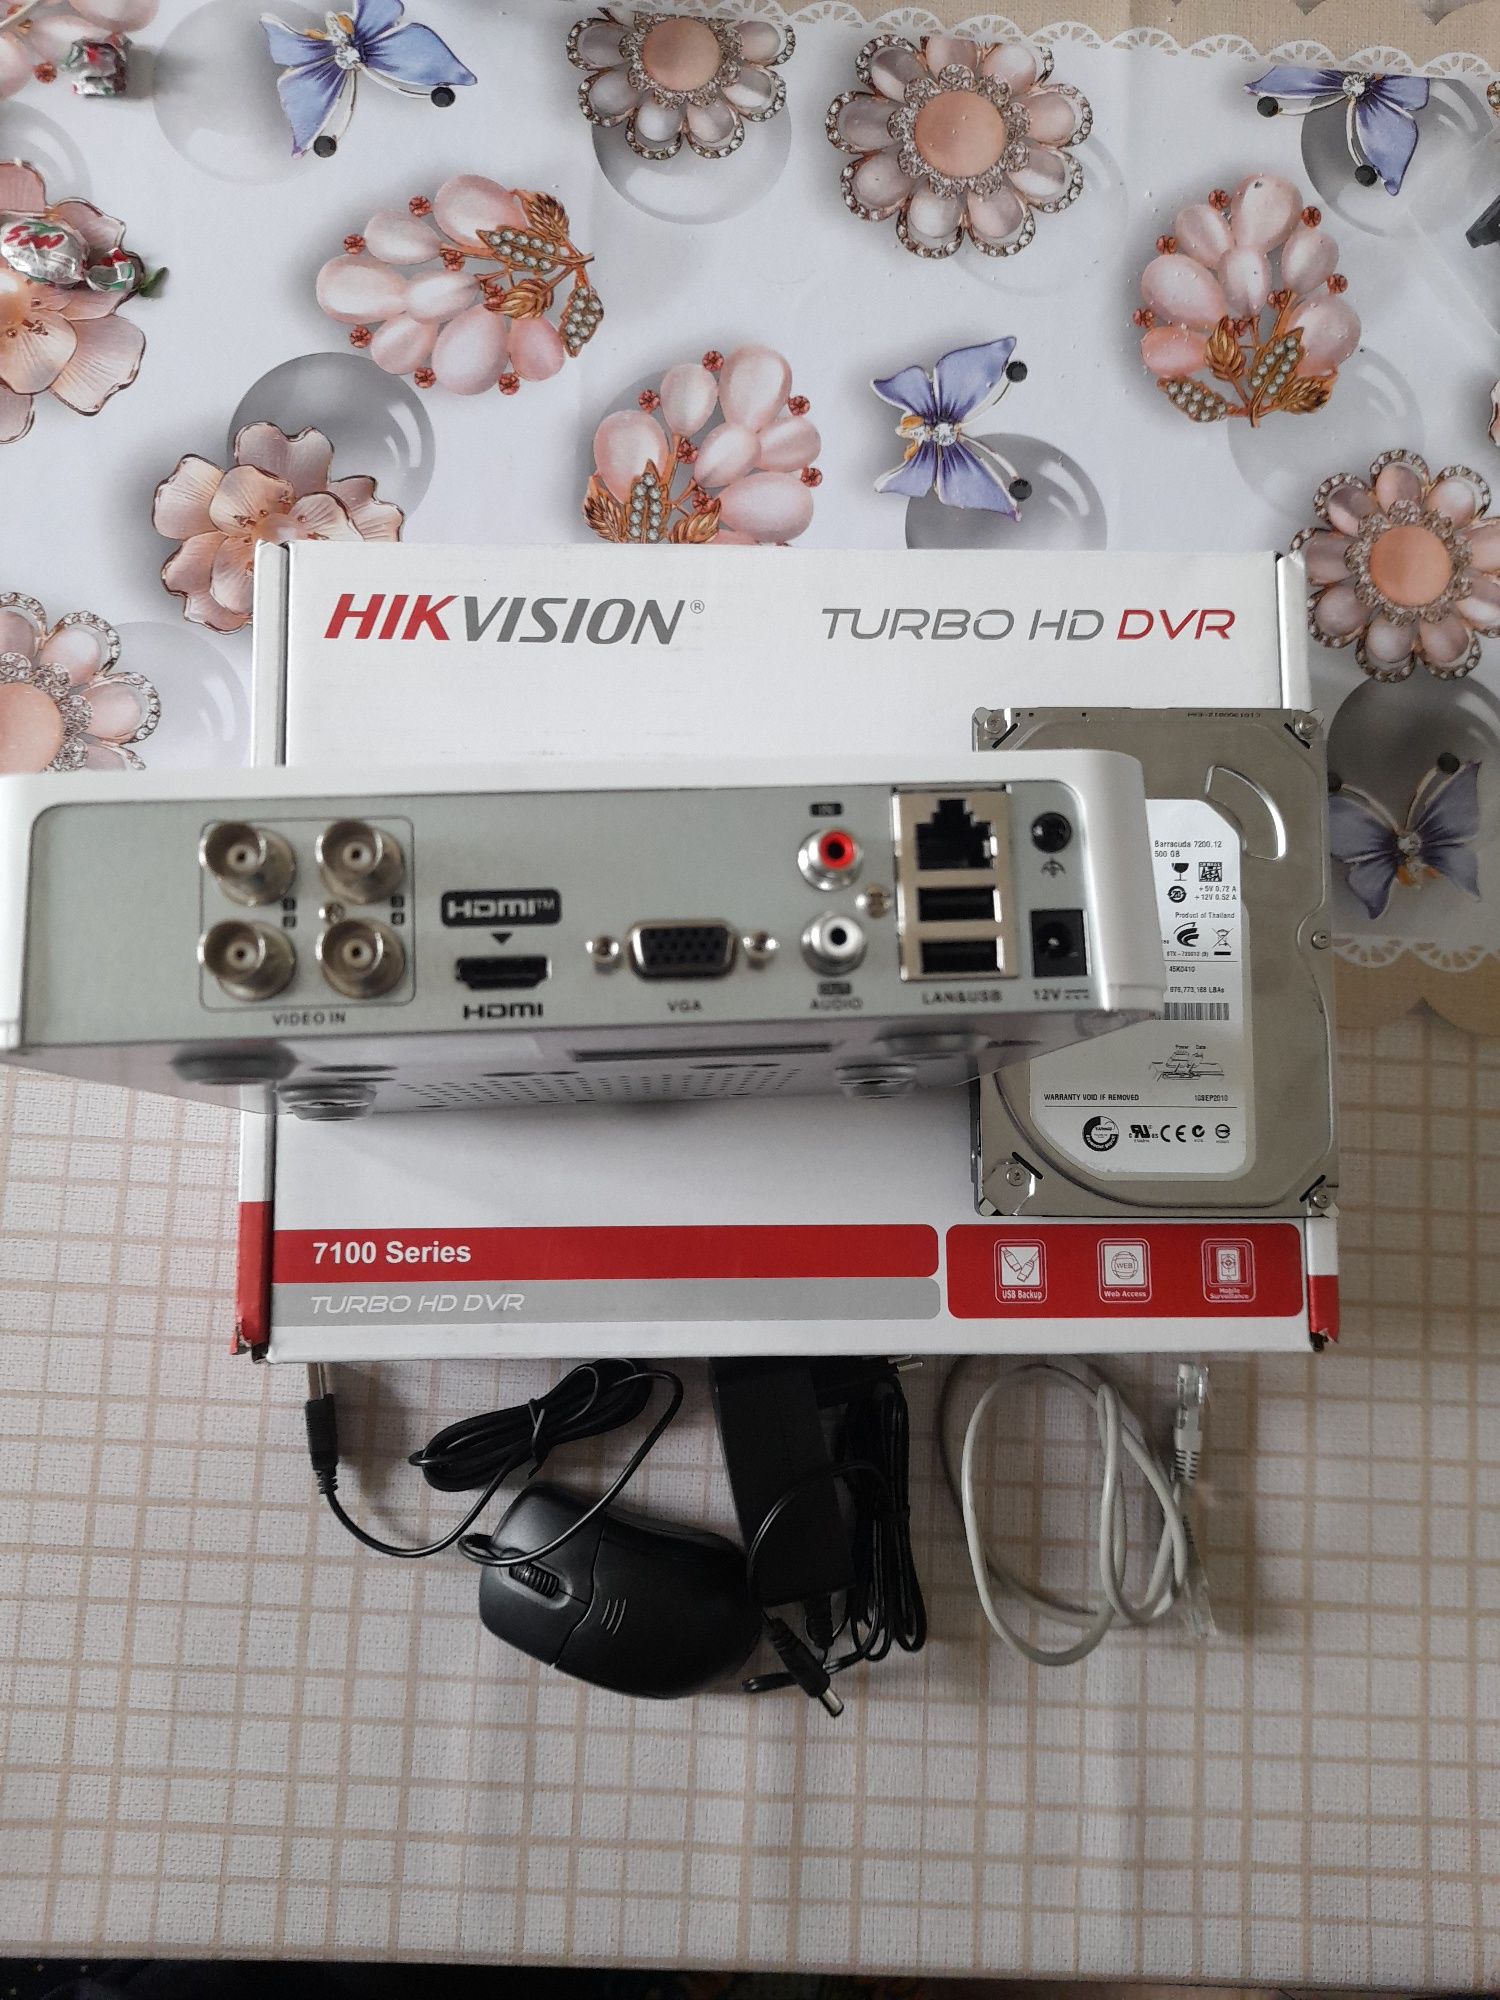 Camera, DVR 4 kanalniy Hikvision va HDD 500 gb Seagate